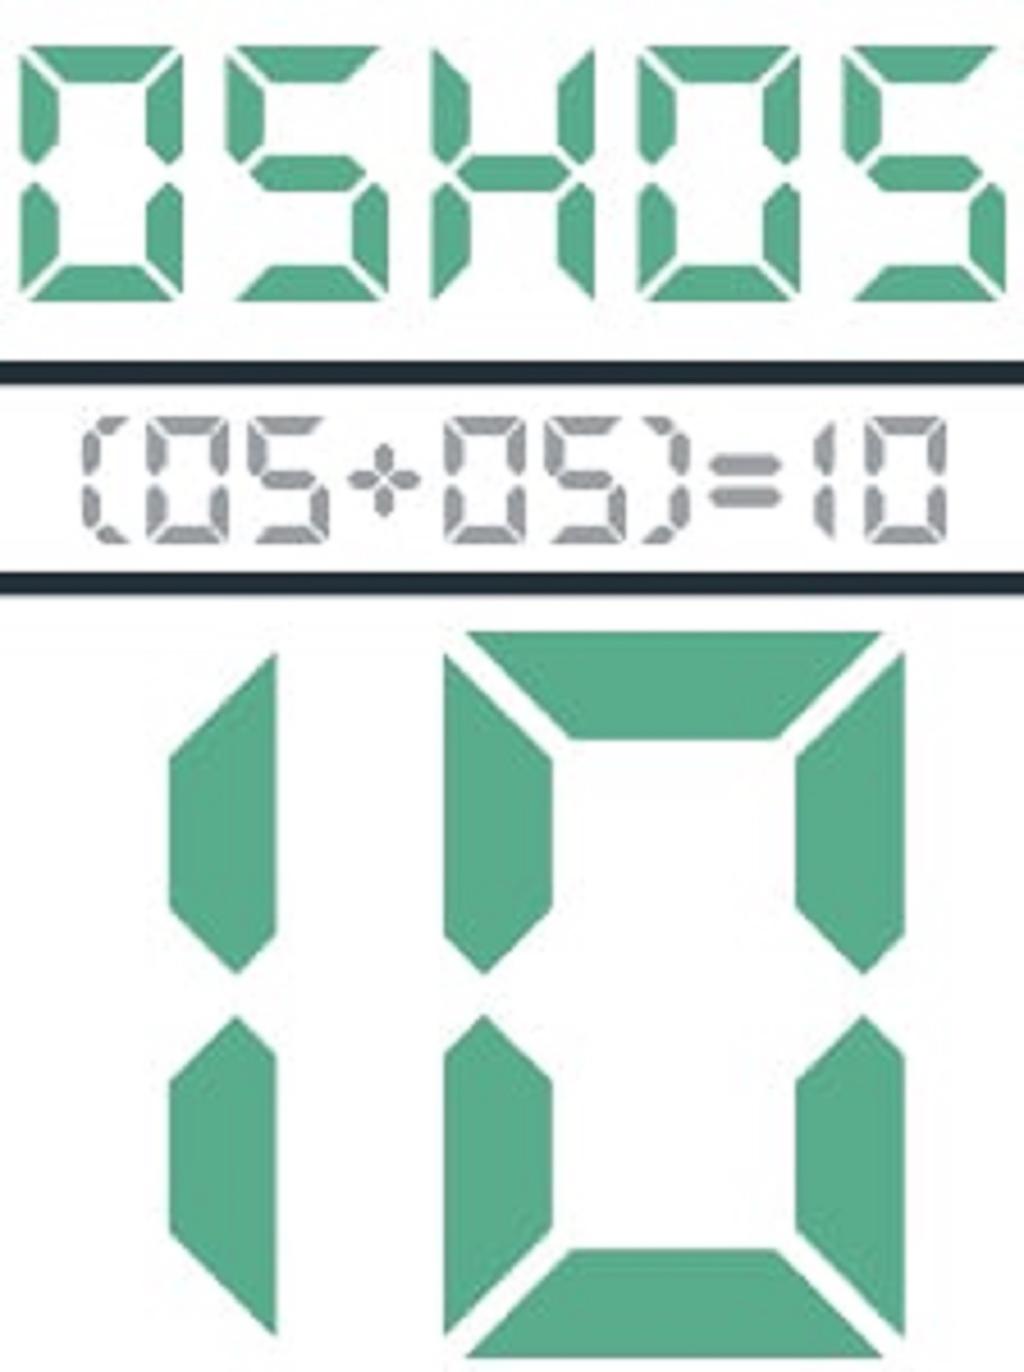 معنی ساعت آینه ای 05:05 در عدد شناسی